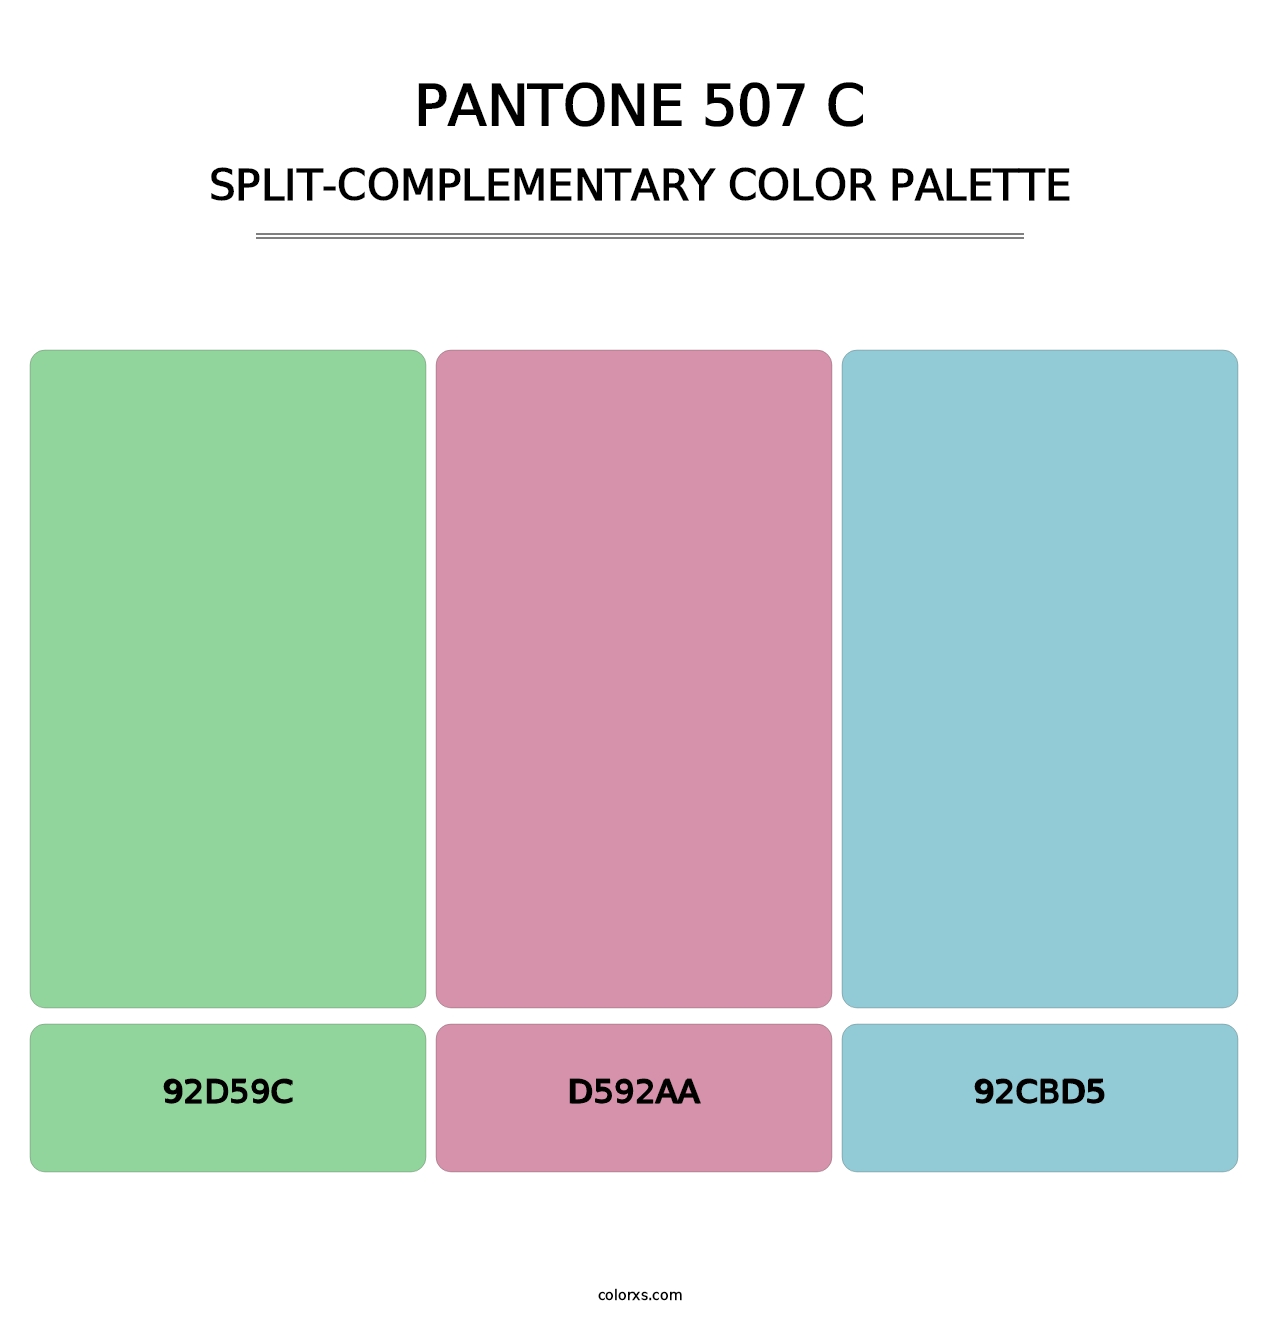 PANTONE 507 C - Split-Complementary Color Palette